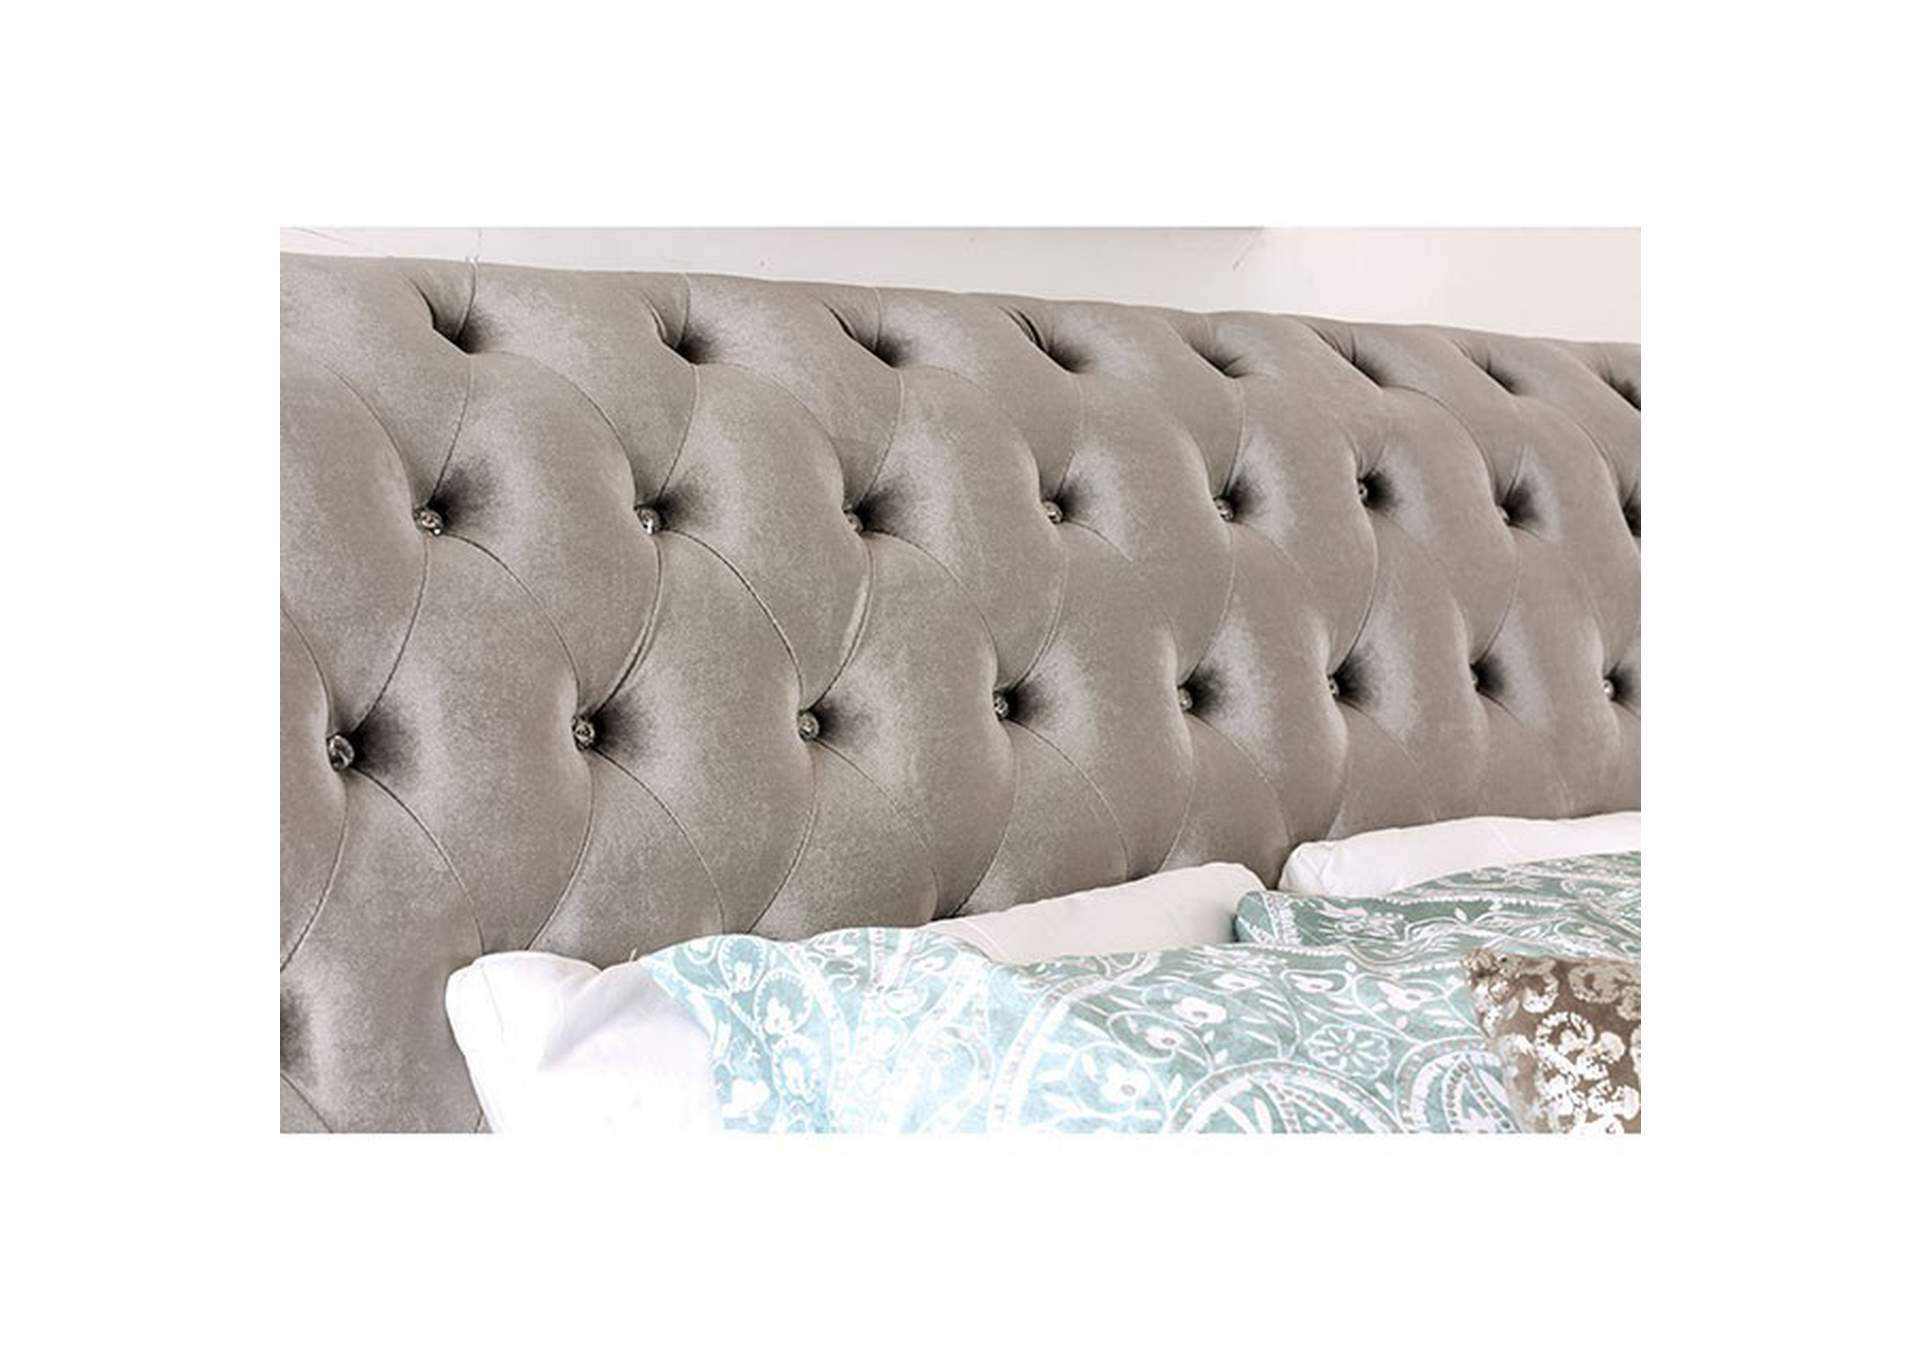 Noella Queen Bed, Gray,Furniture of America